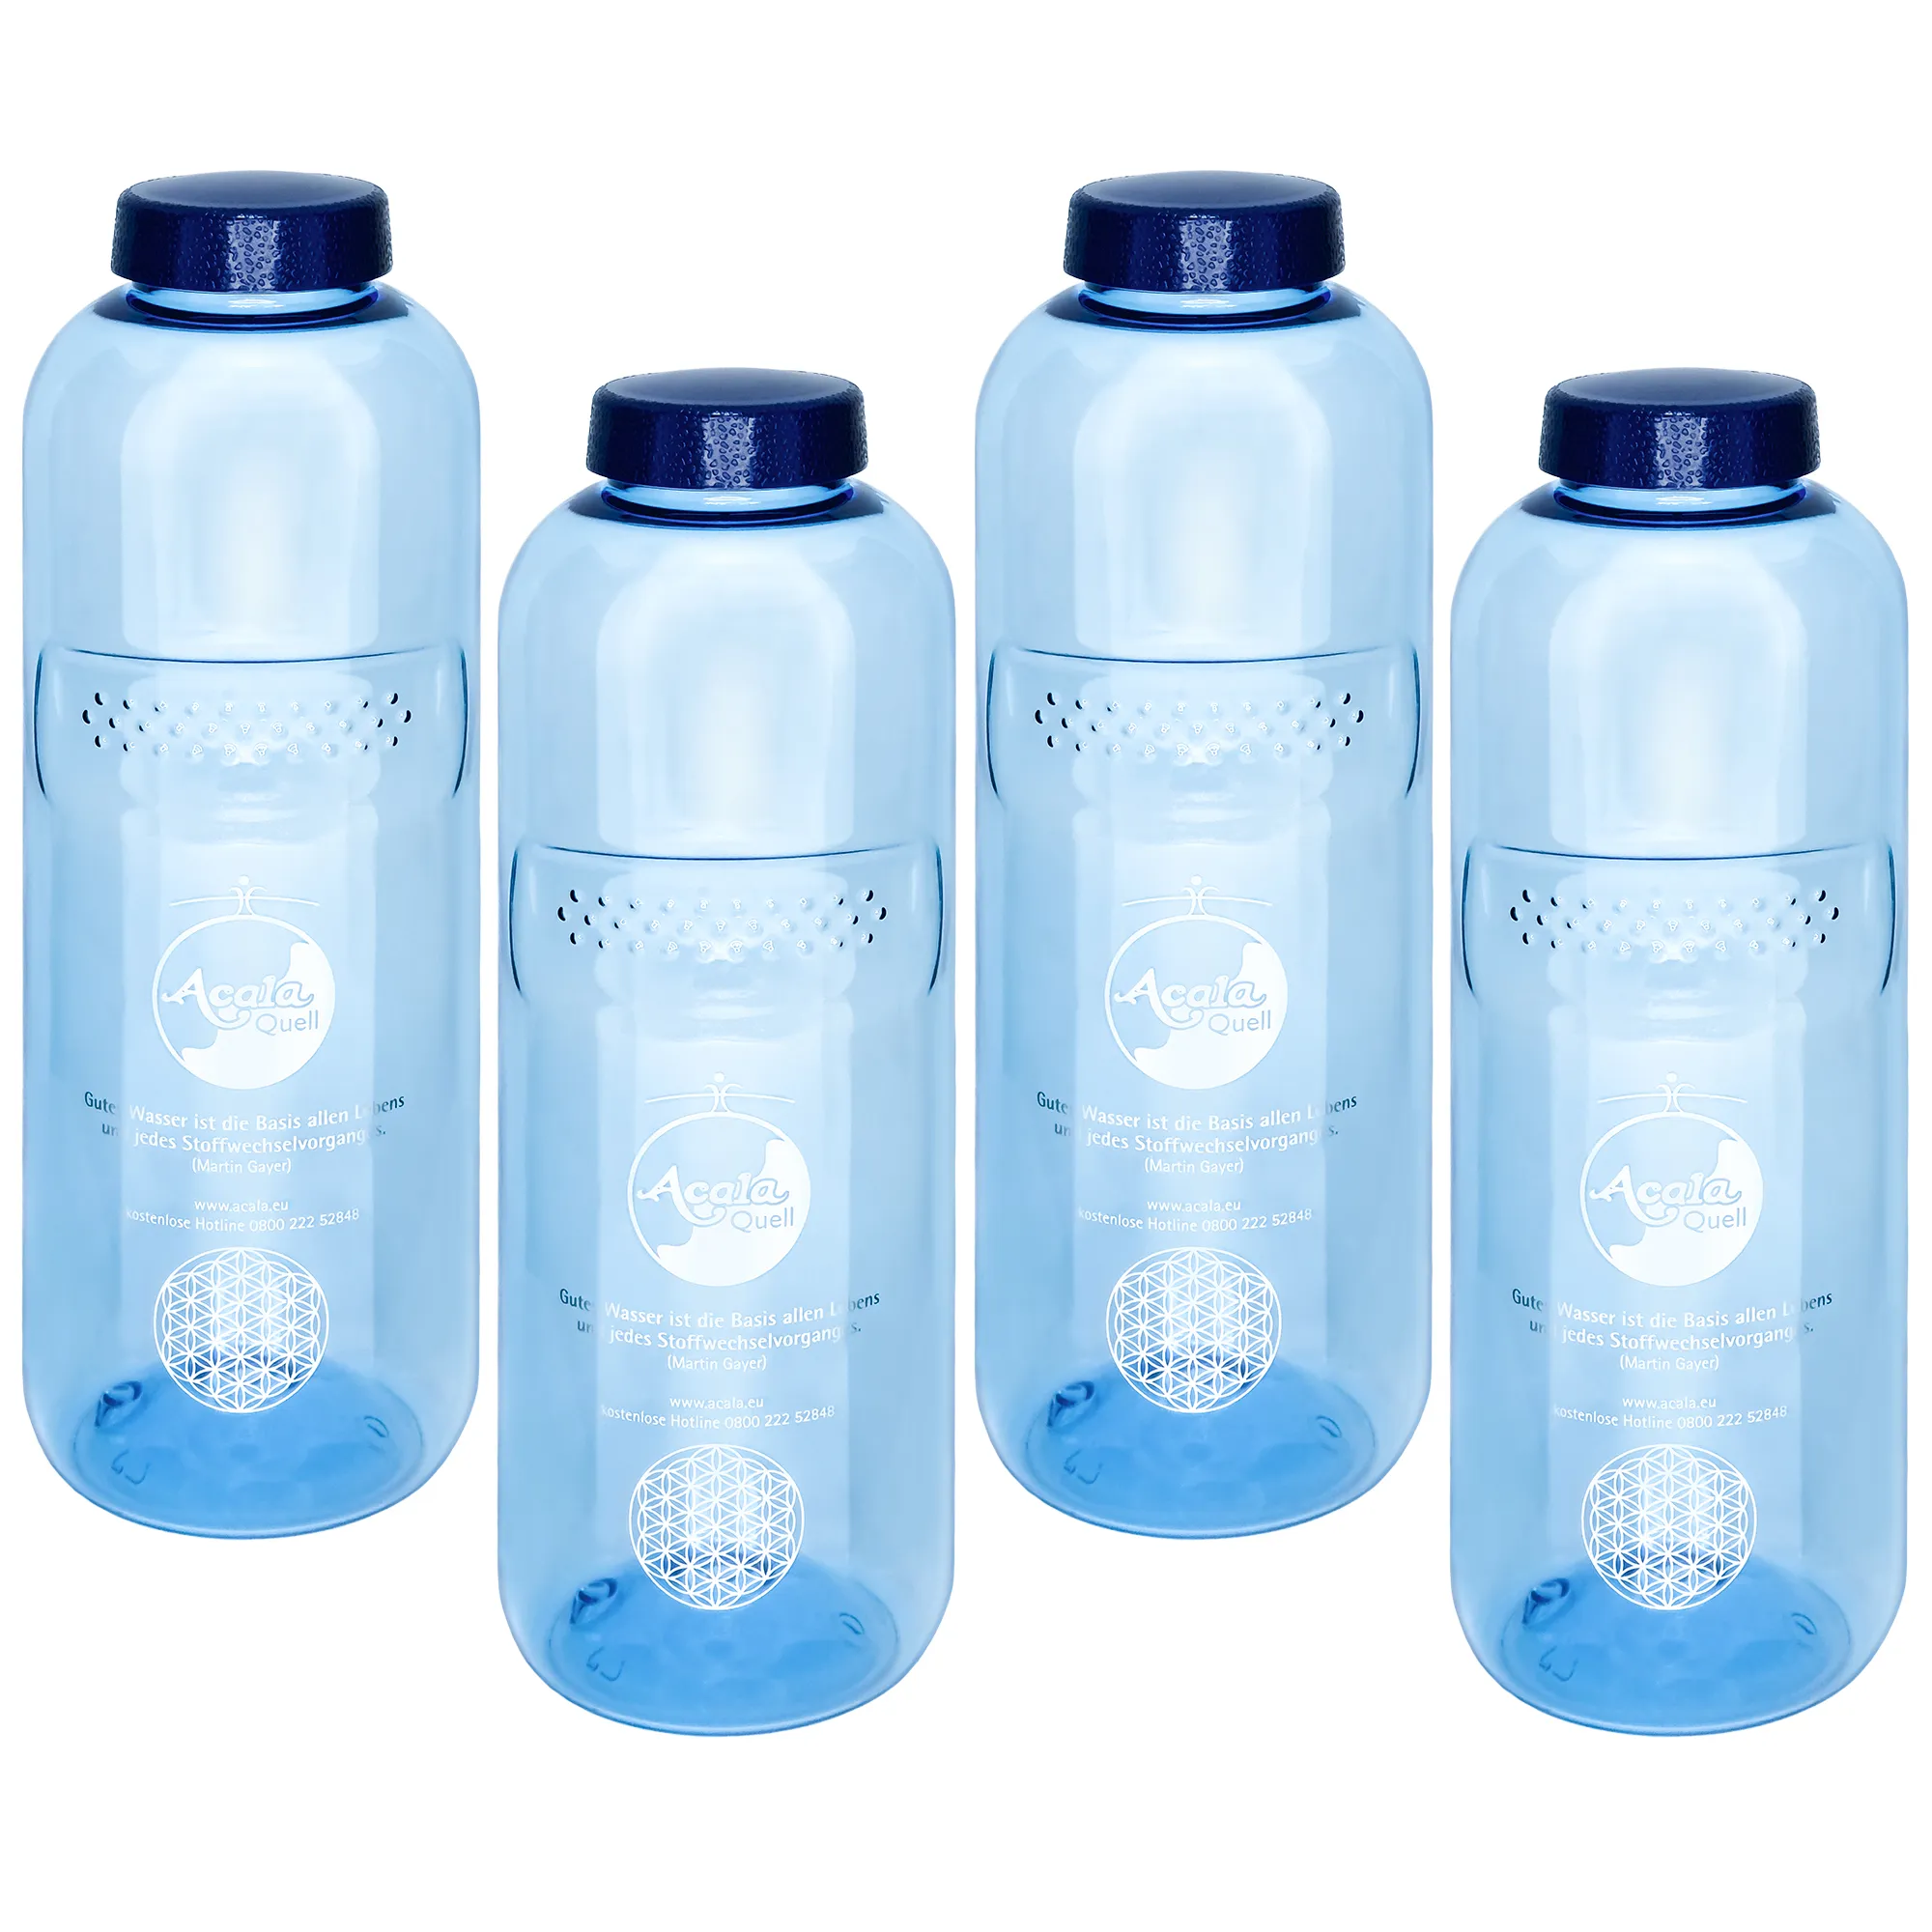 Zu sehen sind vier blaue Tritan Trinkflaschen Grip mit dunkelblauem Schraubdeckel vor weißem Hintergrund. Man sieht ein silbernes Acala Logo und die Blume des Lebens auf den Flaschen.